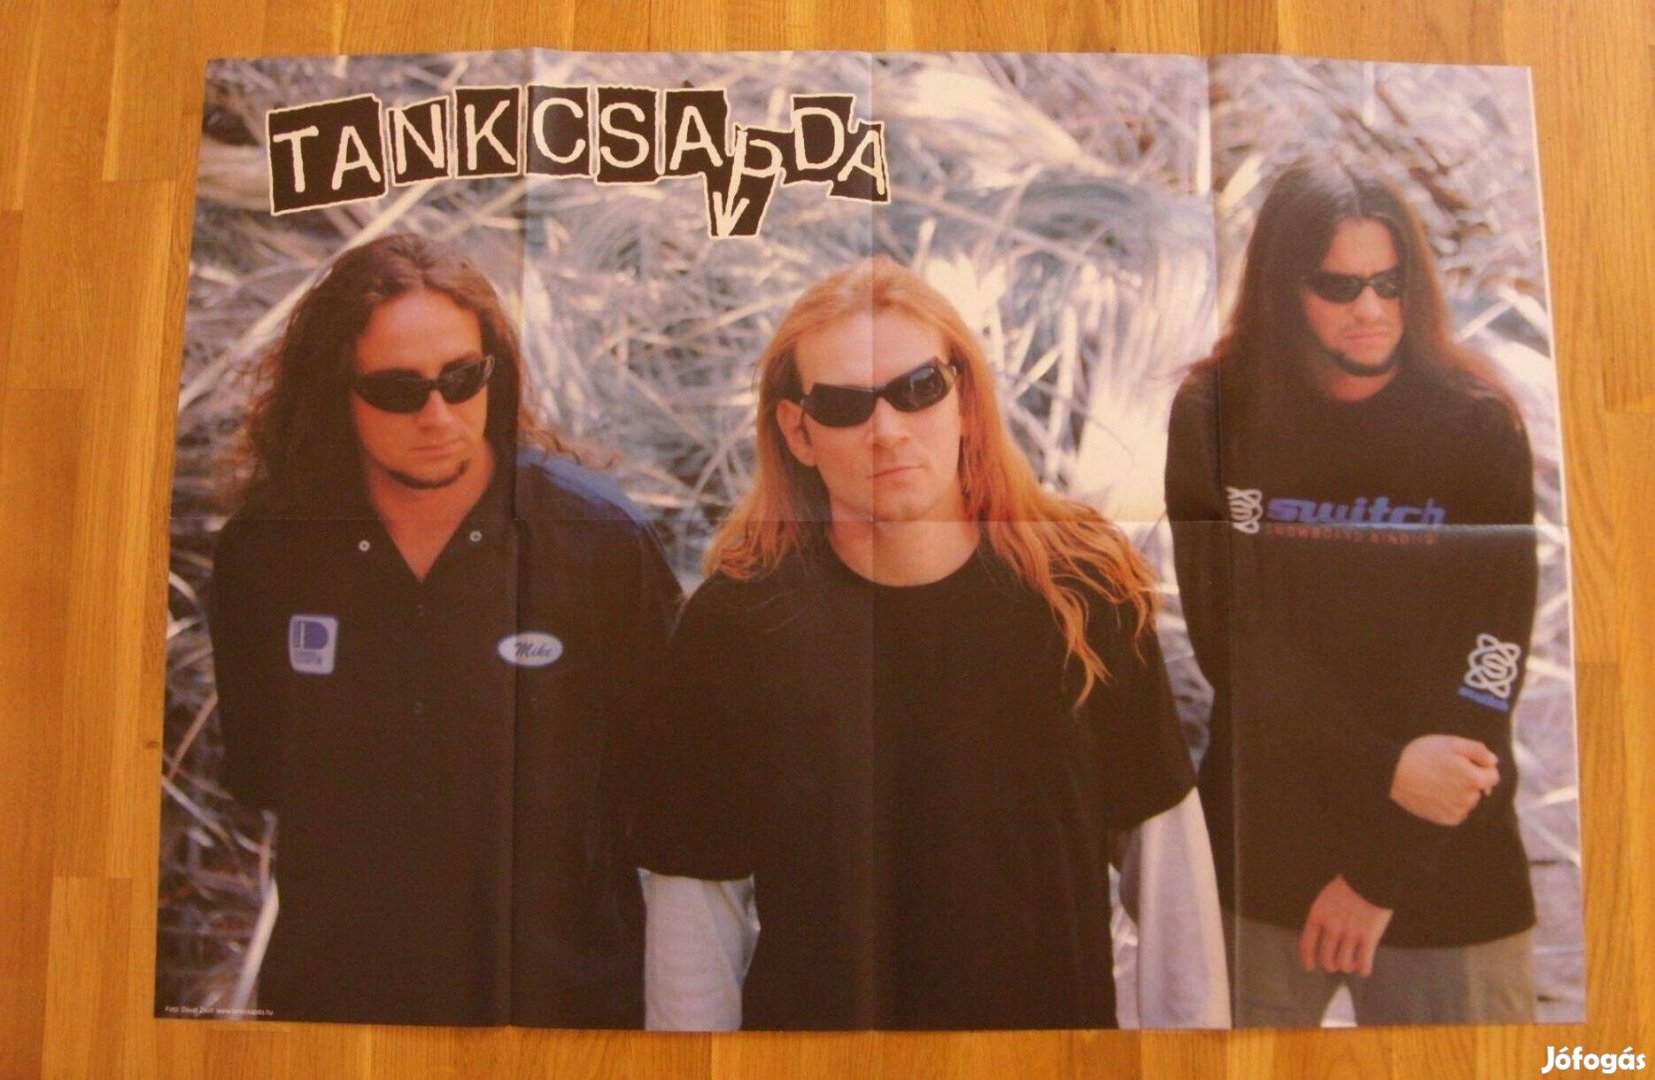 Tankcsapda, Bűbájos boszorkák plakát, poszter, 78 x 54,5 cm